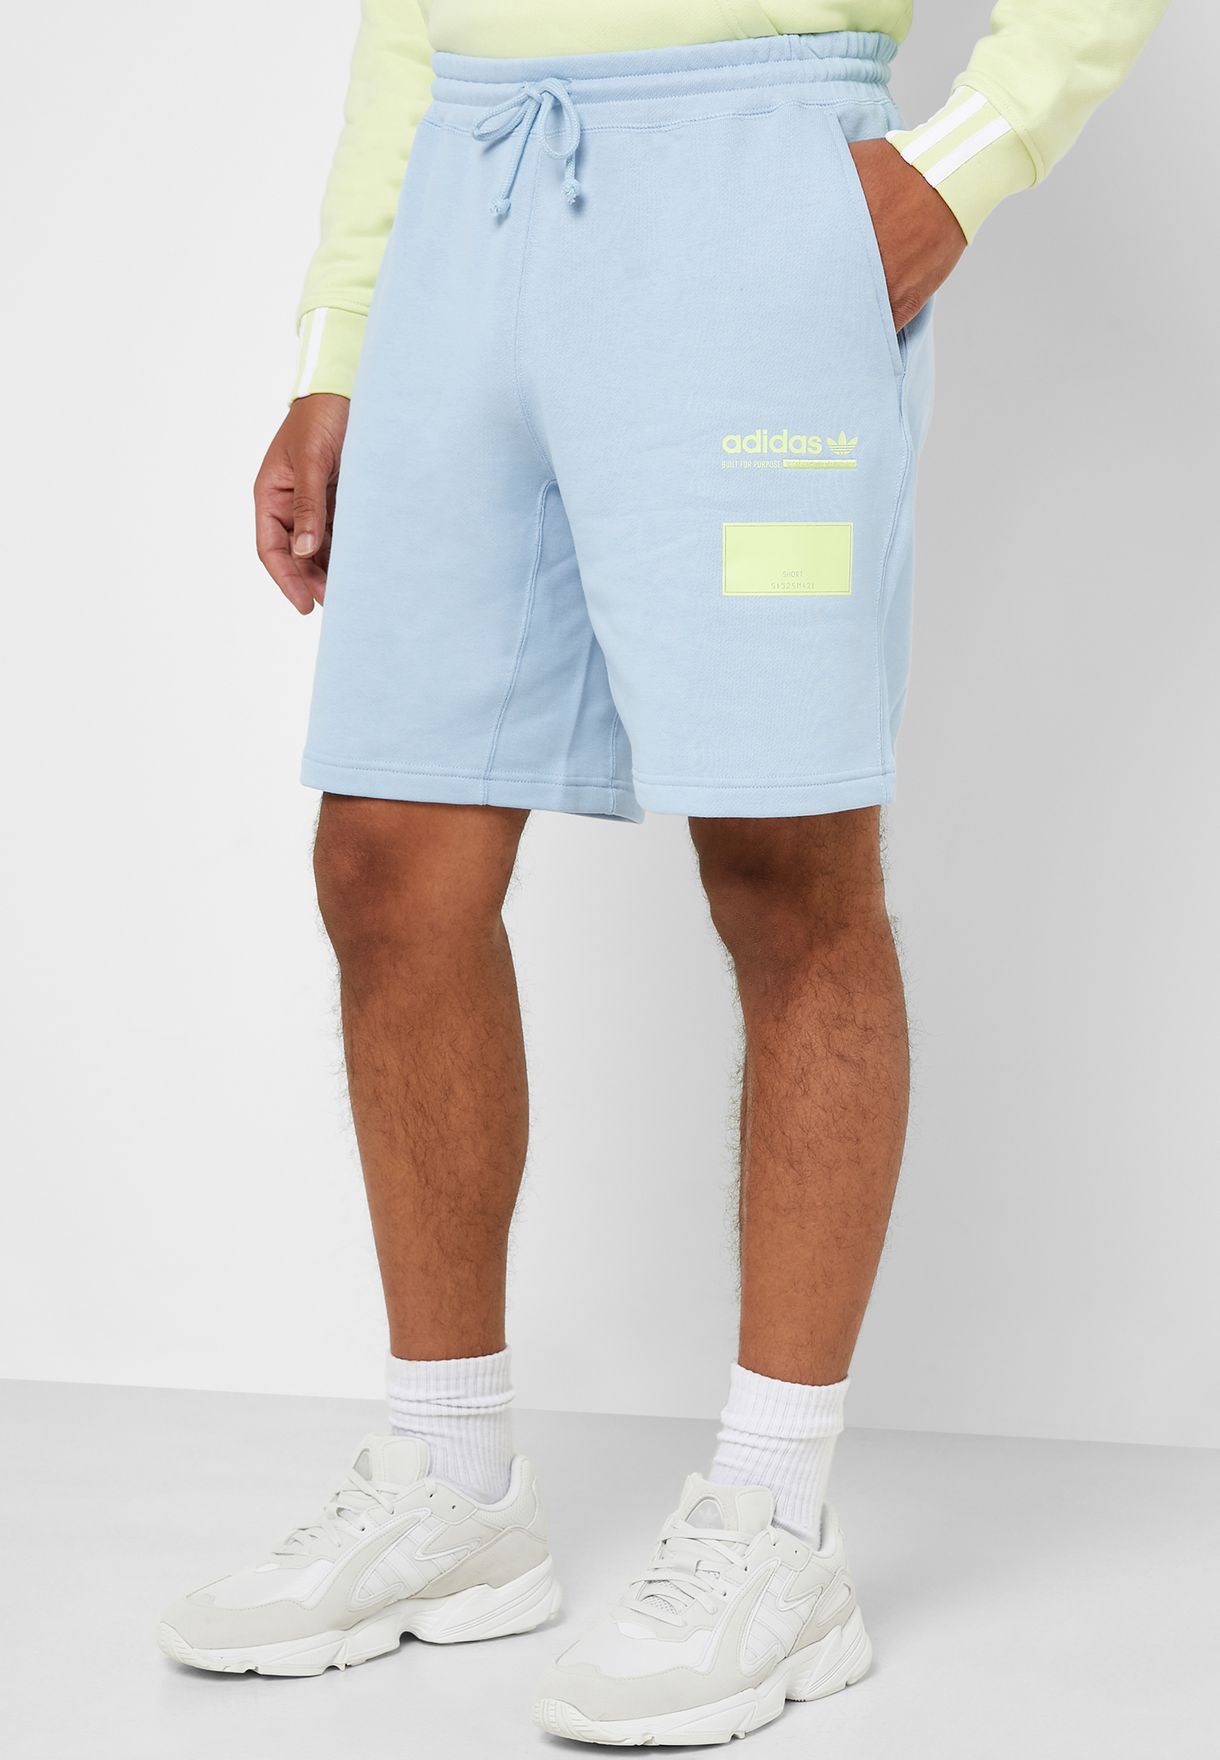 adidas kaval shorts